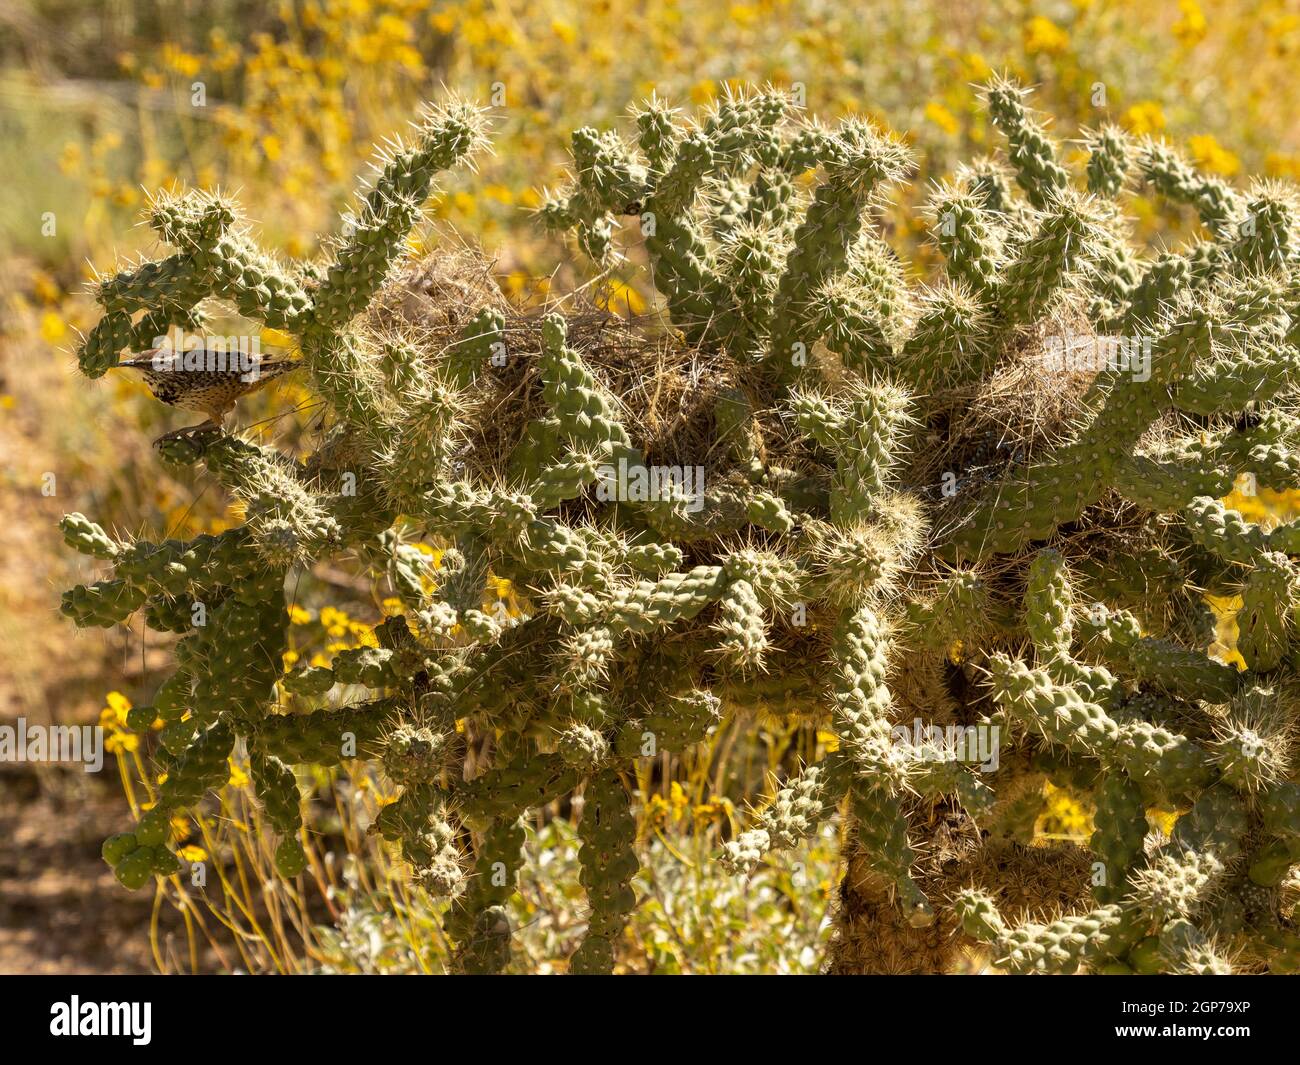 Cactus wren, Marana, cerca de Tucson, Arizona. Foto de stock